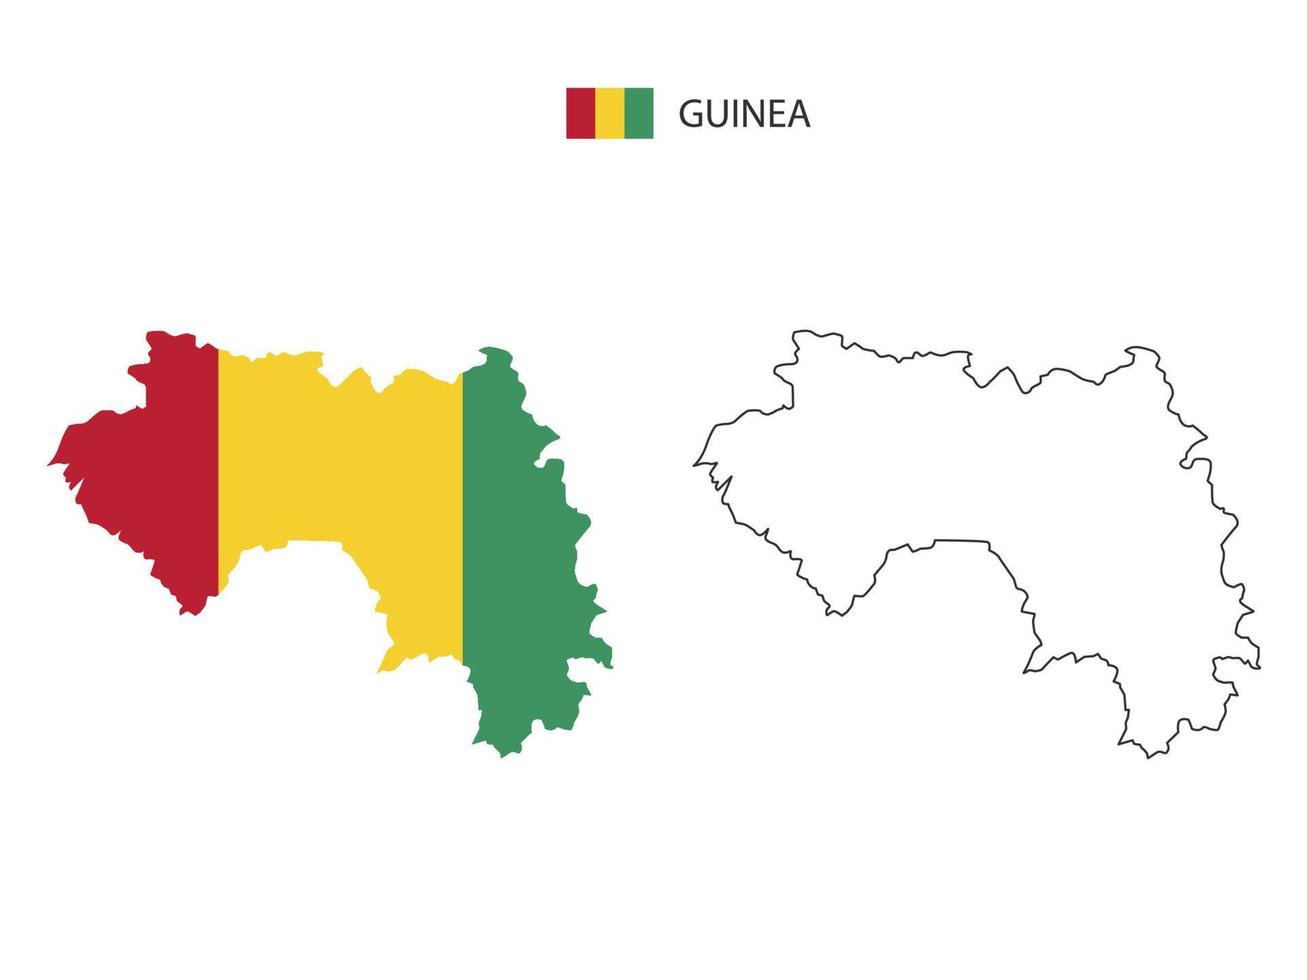 Guinea kaart stad vector verdeeld door schets eenvoud stijl. hebben 2 versies, zwart dun lijn versie en kleur van land vlag versie. beide kaart waren Aan de wit achtergrond.